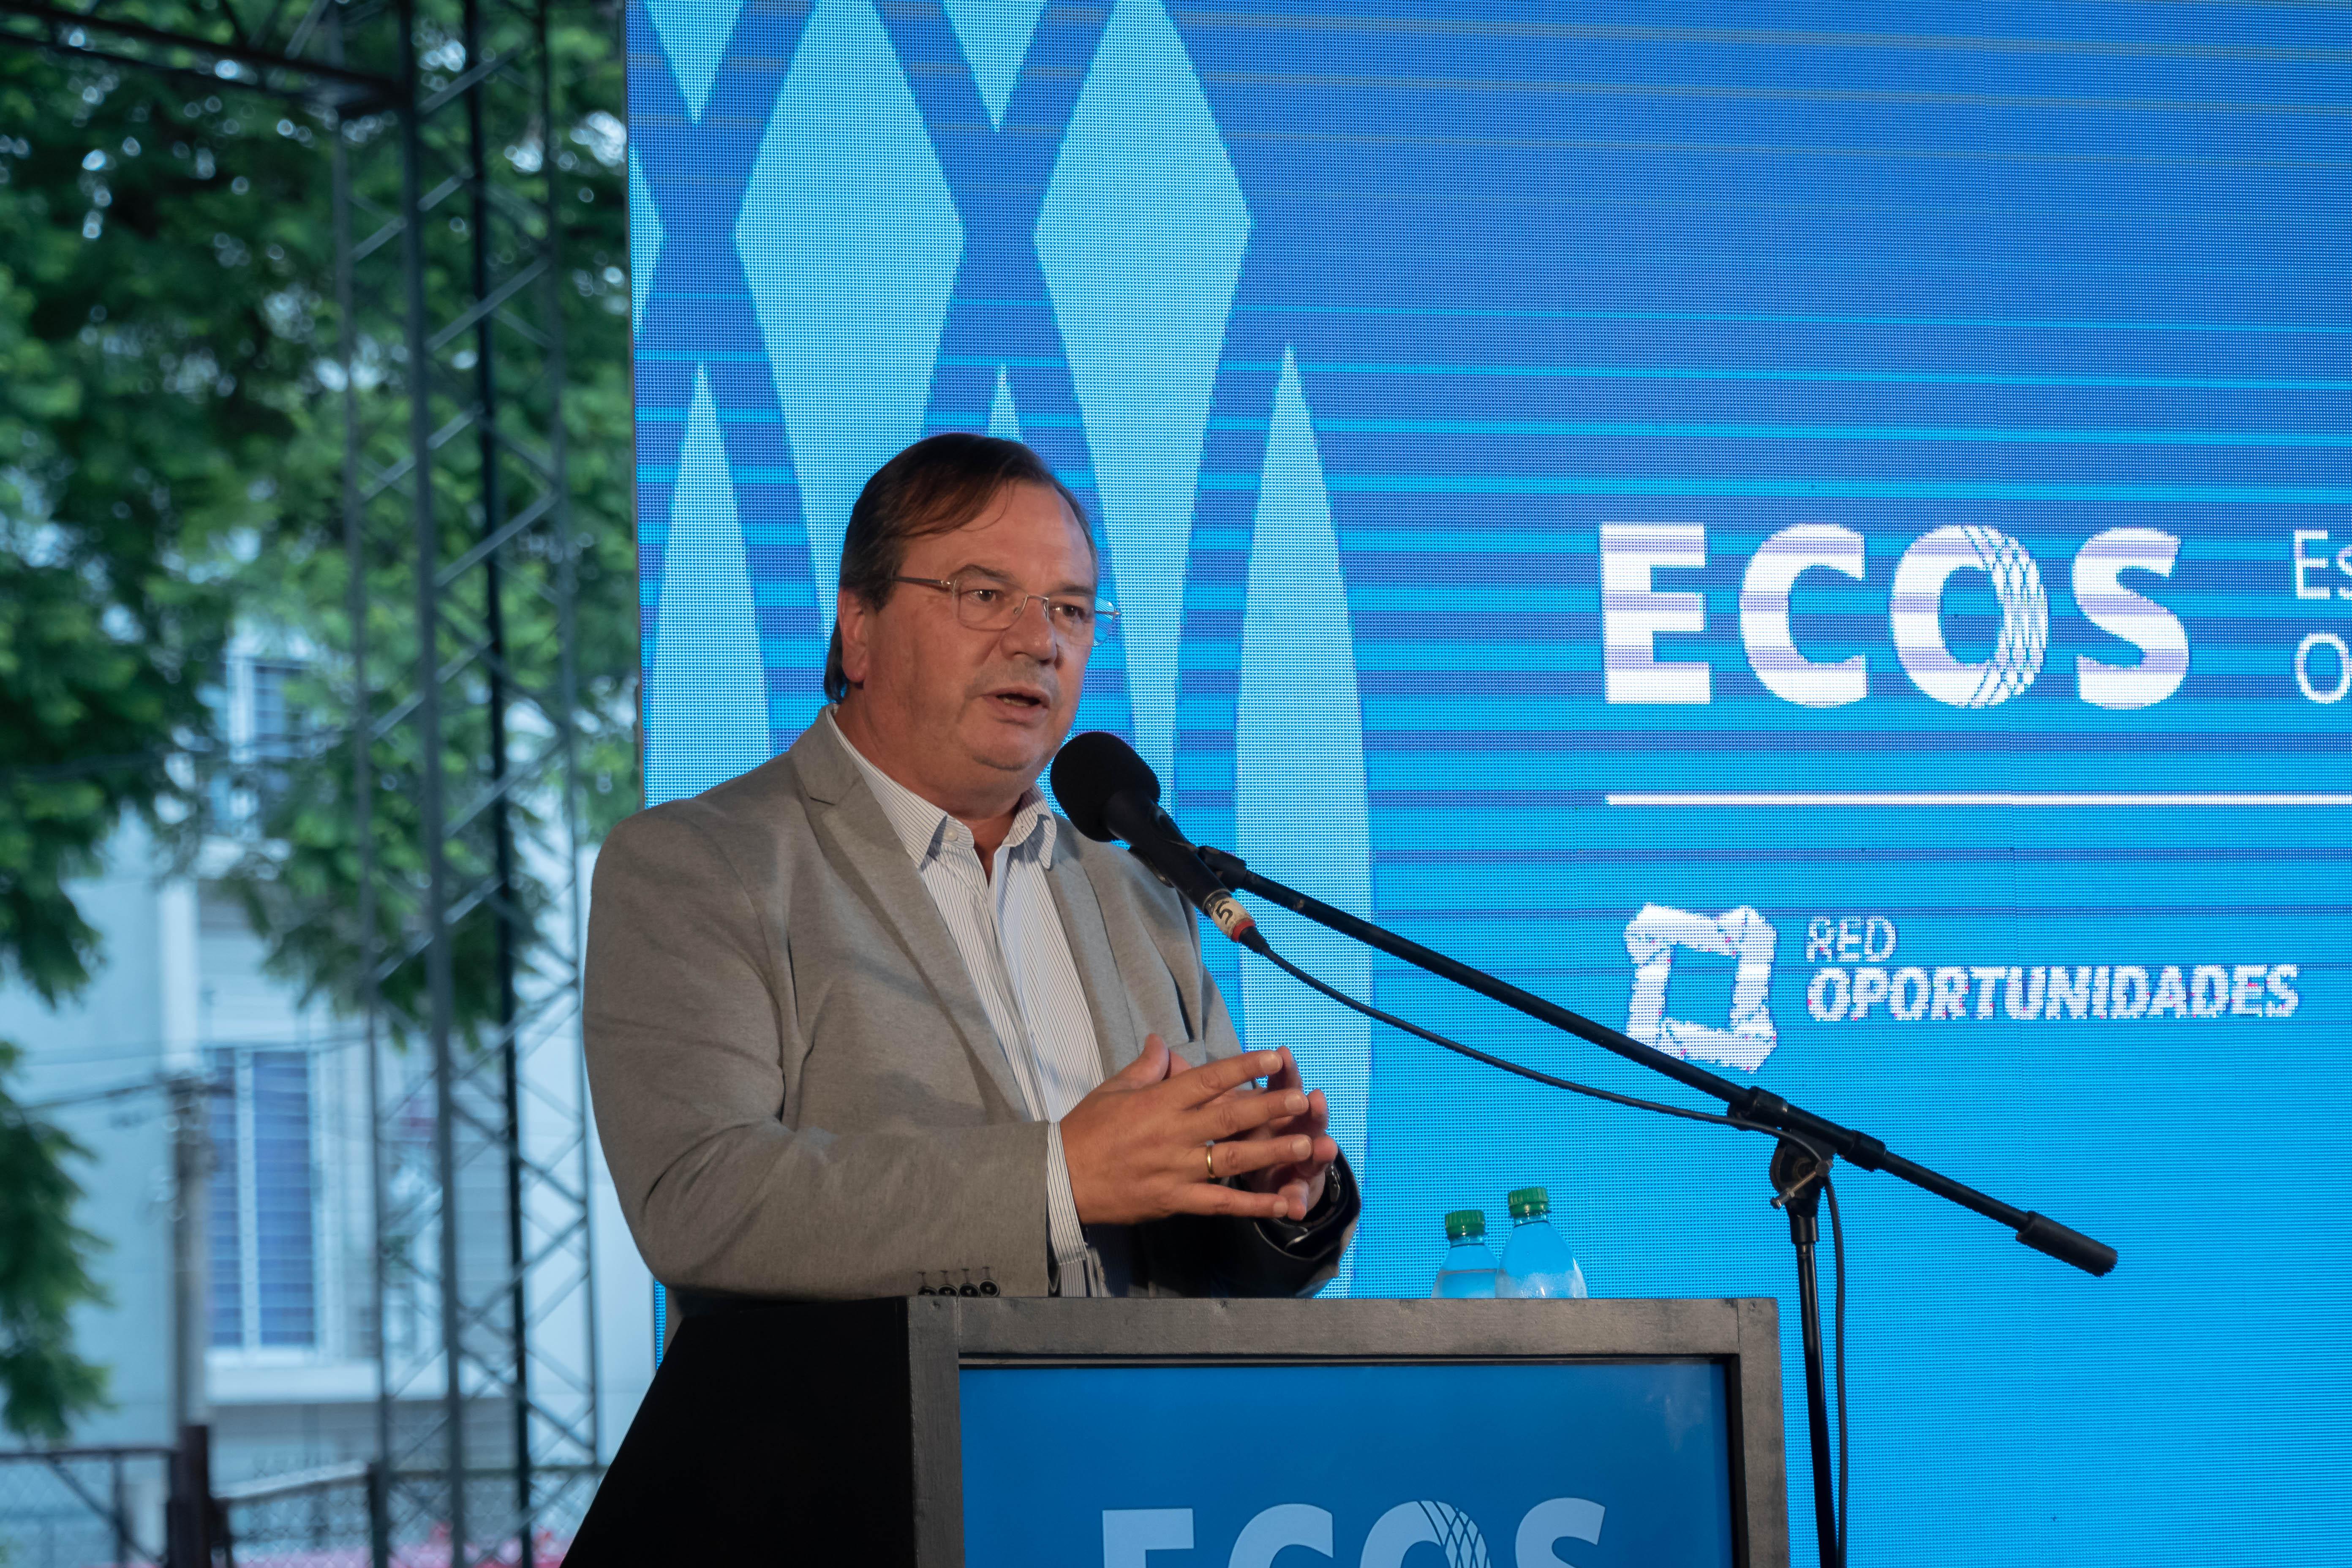 Inauguración de ECOS, Espacio de Capacitación y Oportunidades Sociolaborales